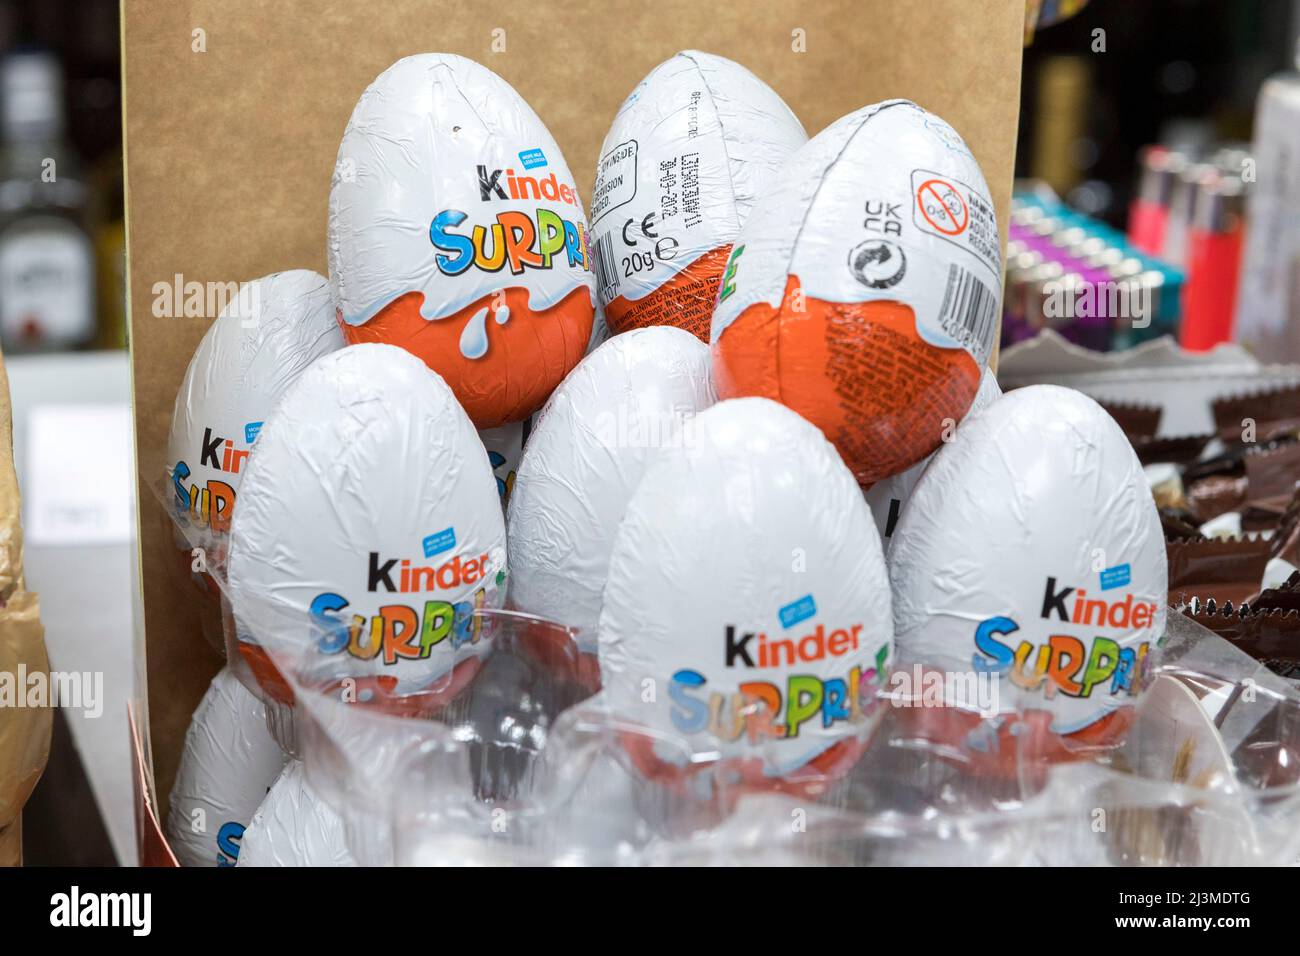 Una piccola quantità di uova di sorpresa Kinder 20g con scadenza il giorno di settembre 2022 sono viste ancora immagazzinate al negozio locale conveniente. Immagini acquisite su 6th Apri Foto Stock